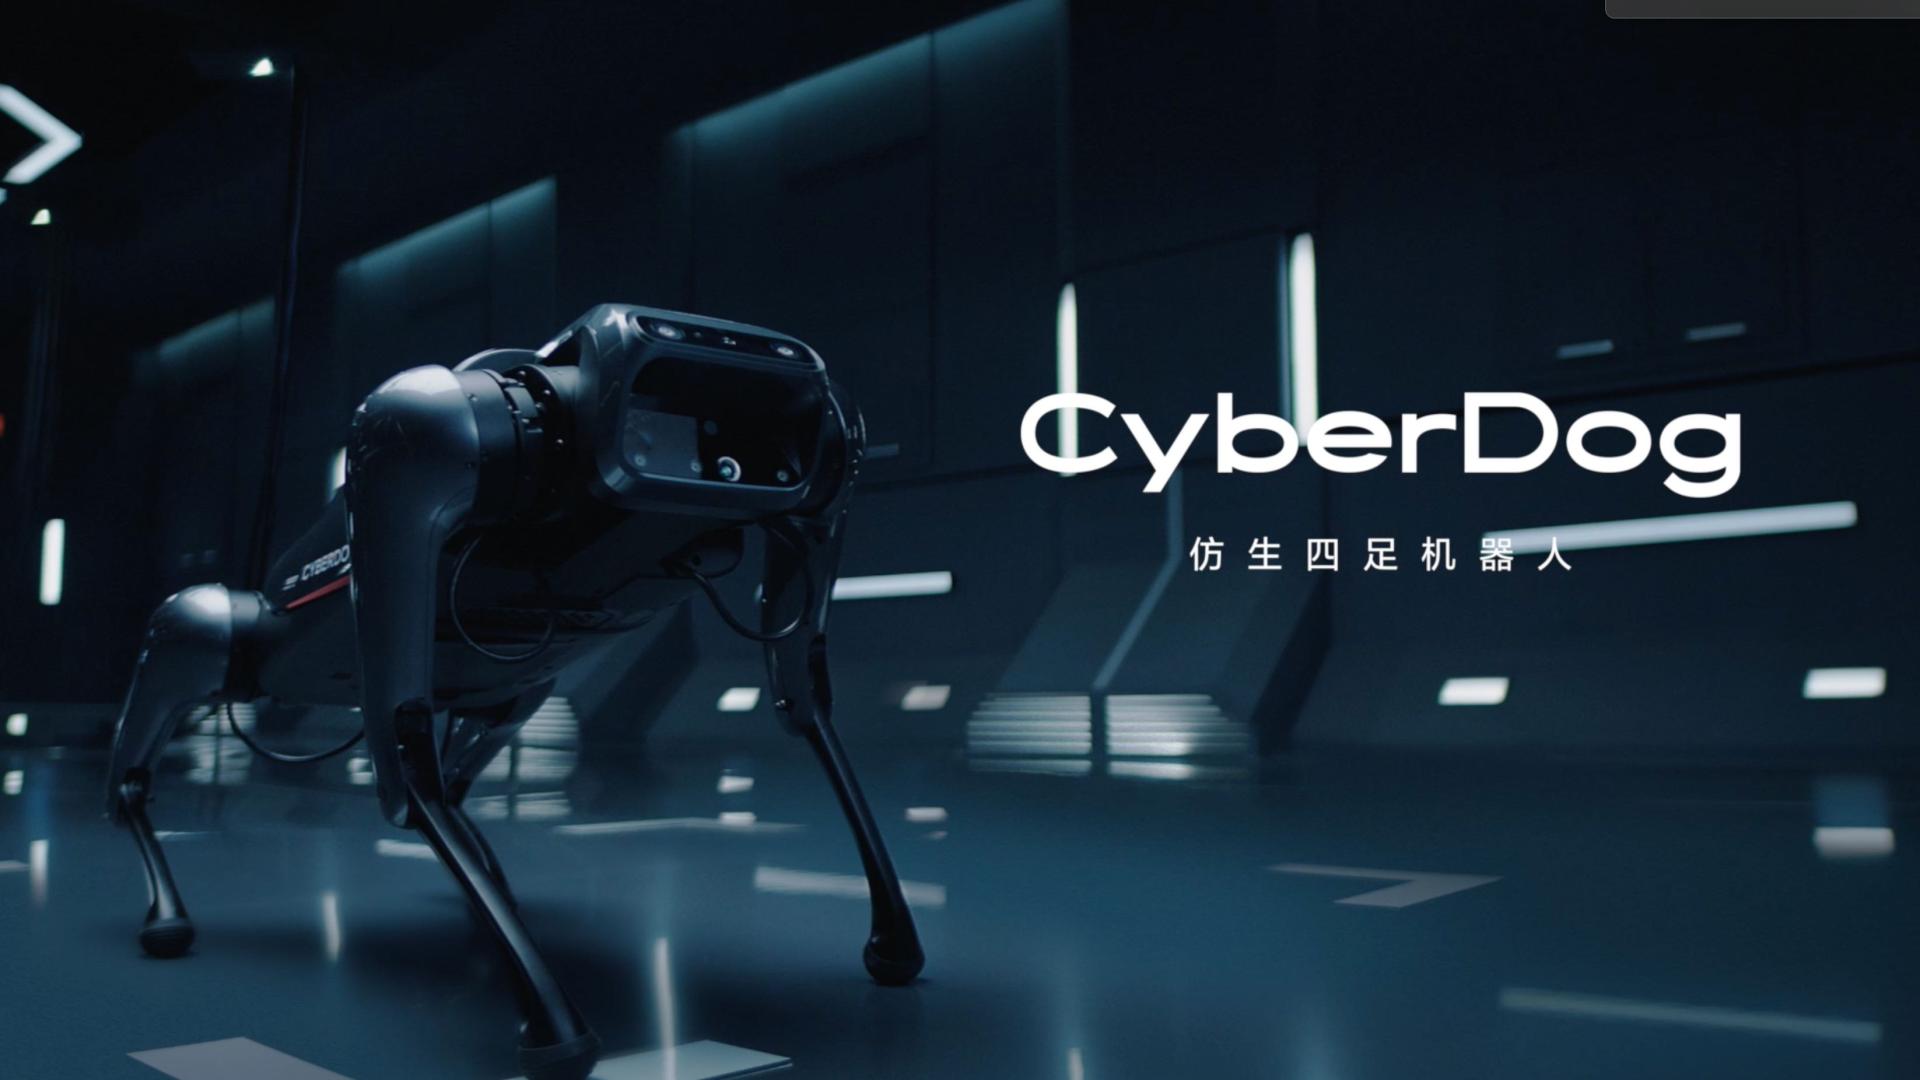 小米首款仿生四足机器人-<CyberDog亮相视频>